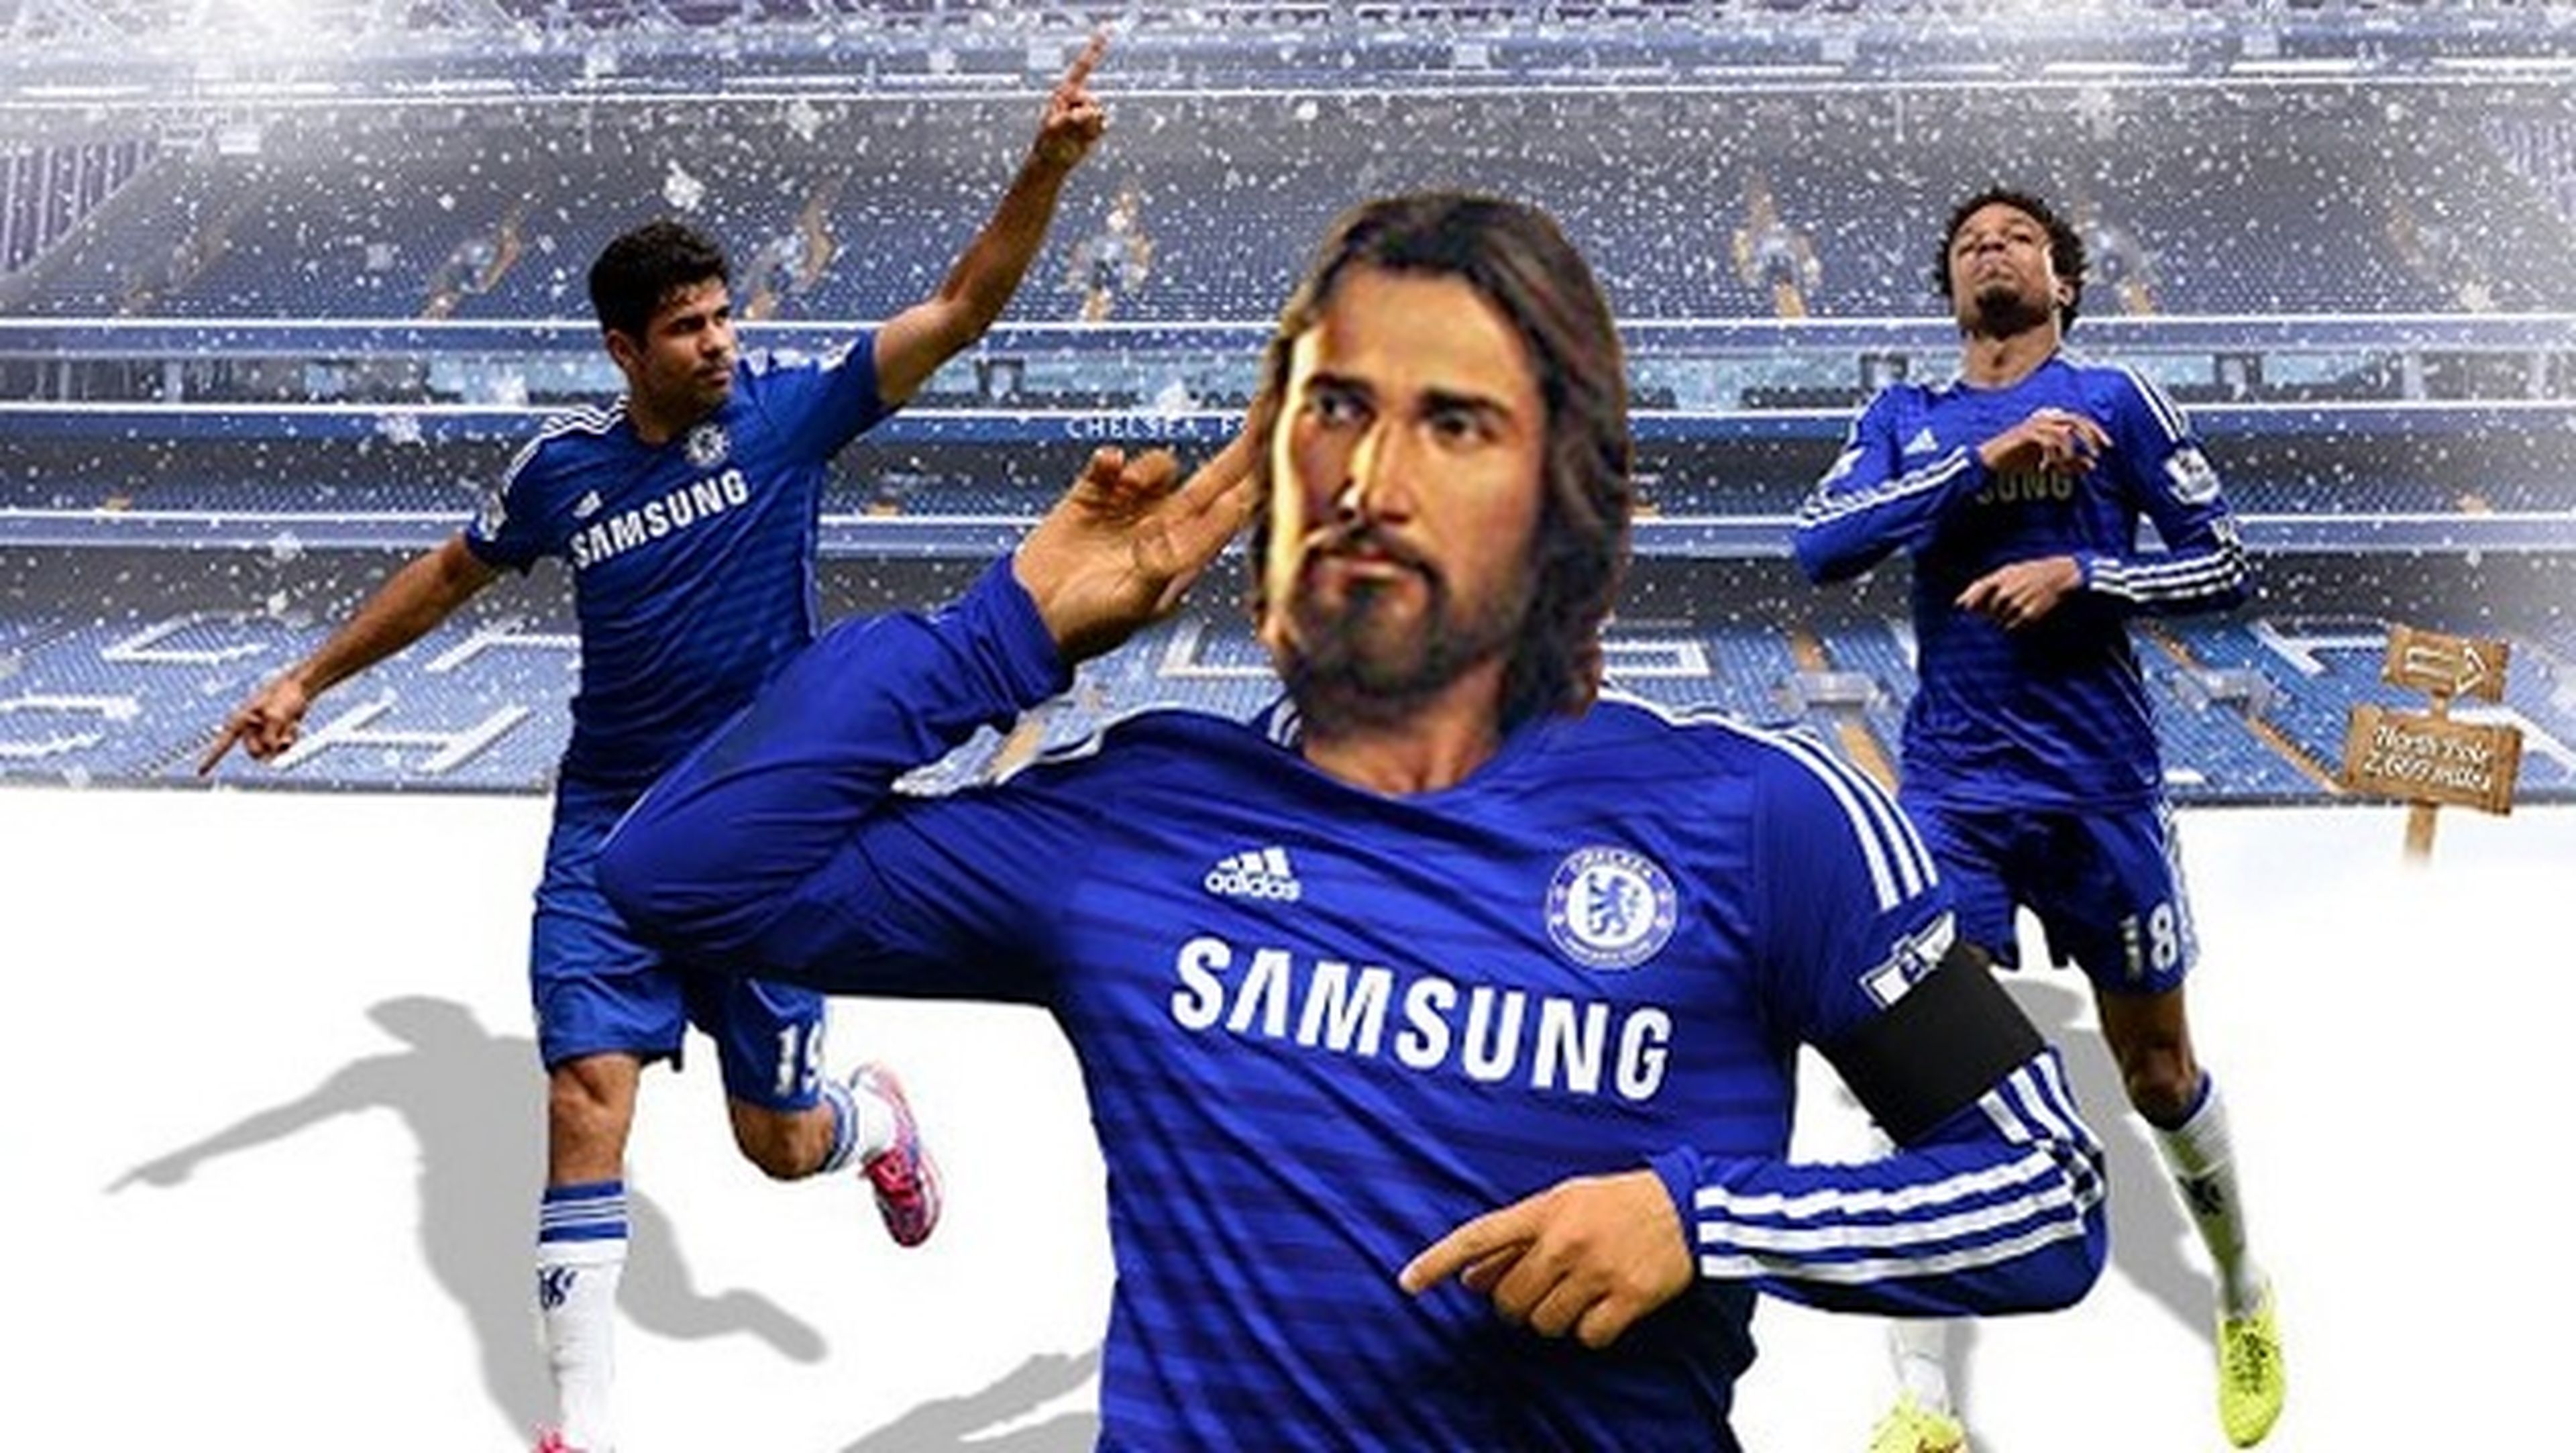 Niños británicos creen que Jesucristo es un jugador del Chelsea